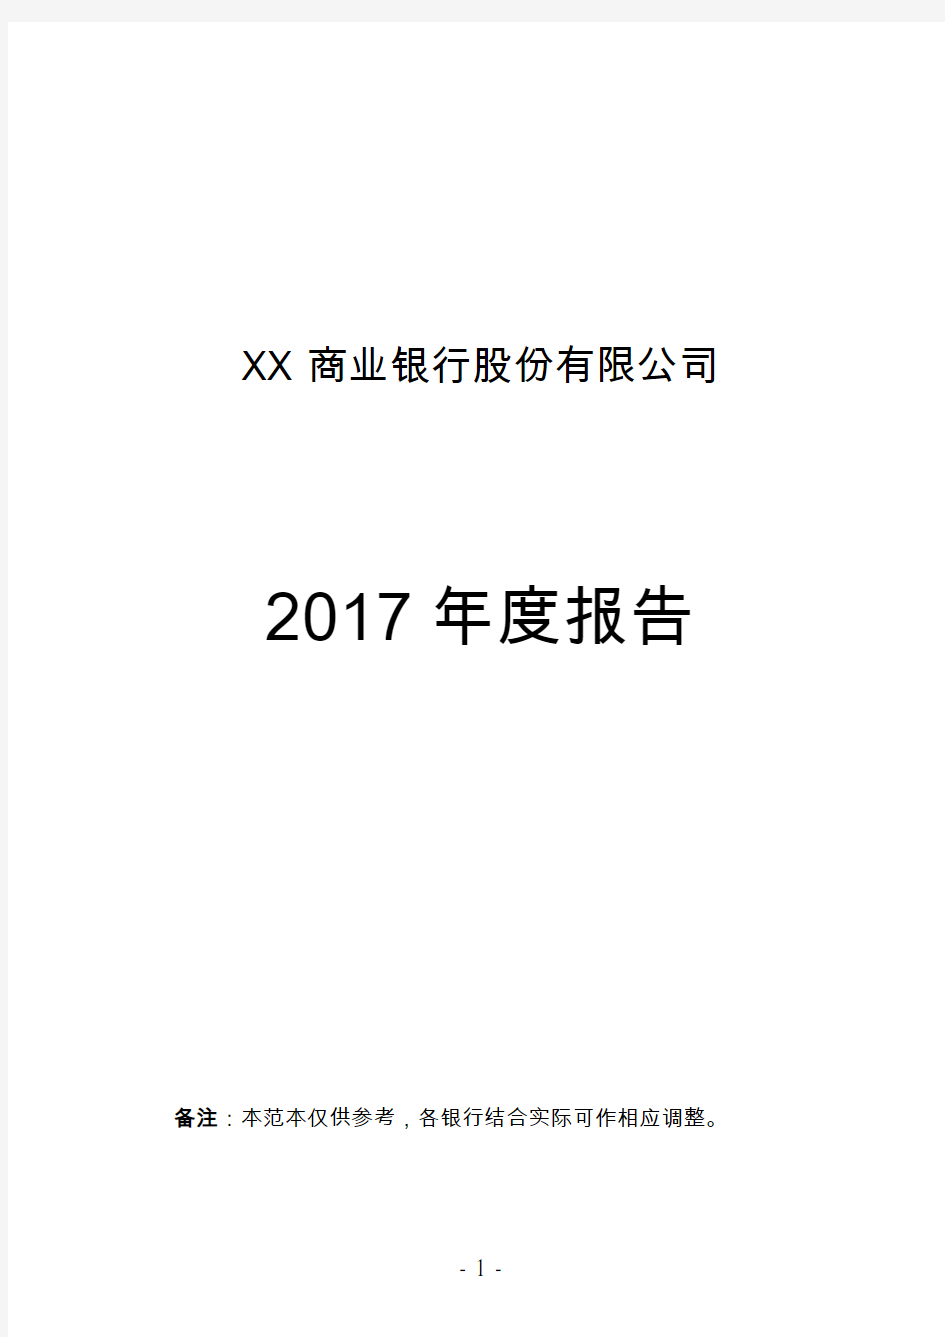 XX商业银行股份有限公司2017年度报告(信息披露范本)20180212